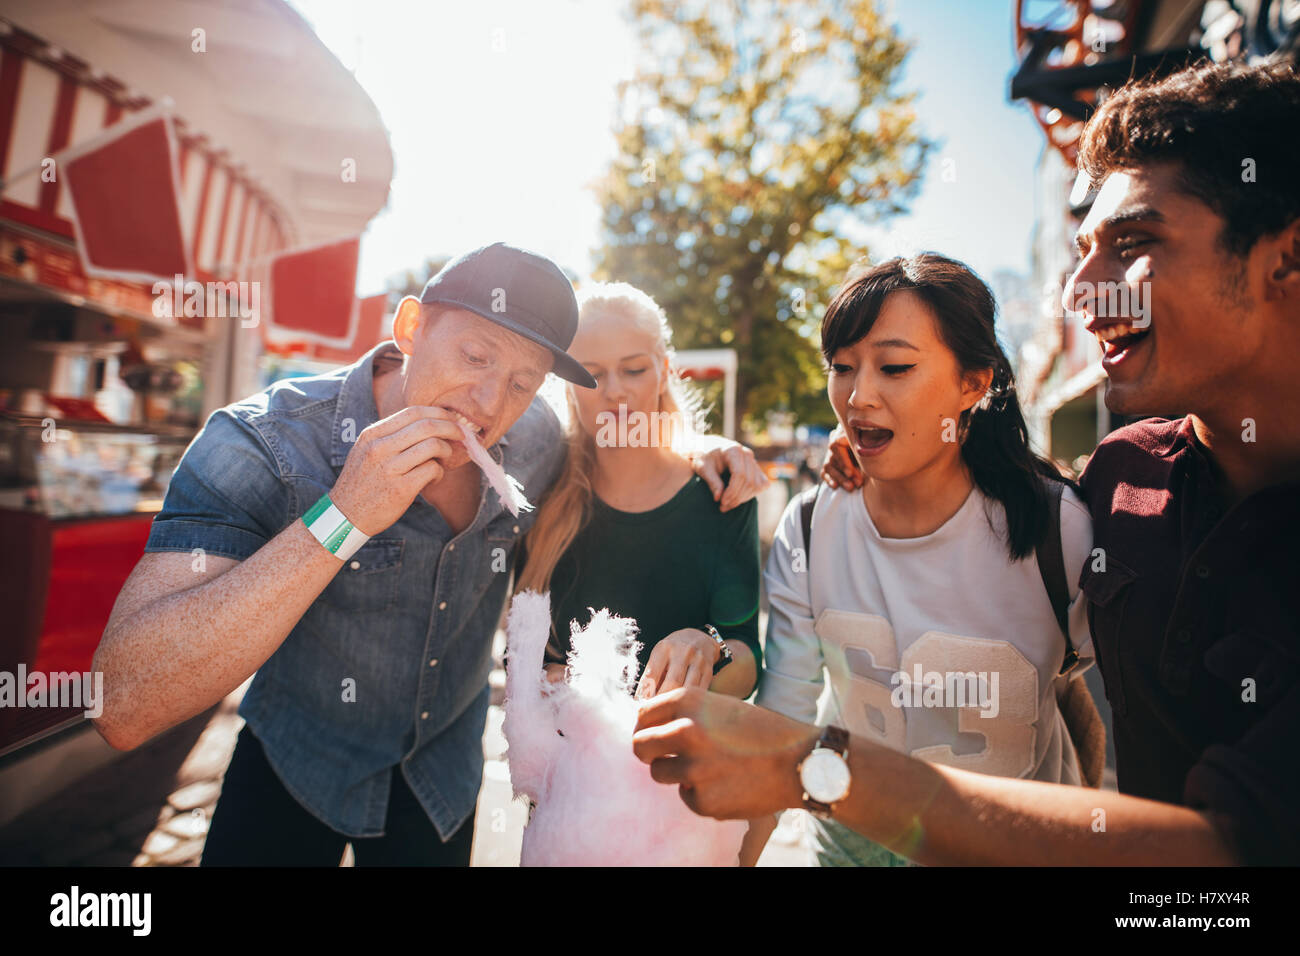 Gruppe von Freunden zusammen essen Zuckerwatte im Vergnügungspark. Junge Männer und Frauen teilen Baumwolle Zuckerwatte am Messegelände. Stockfoto